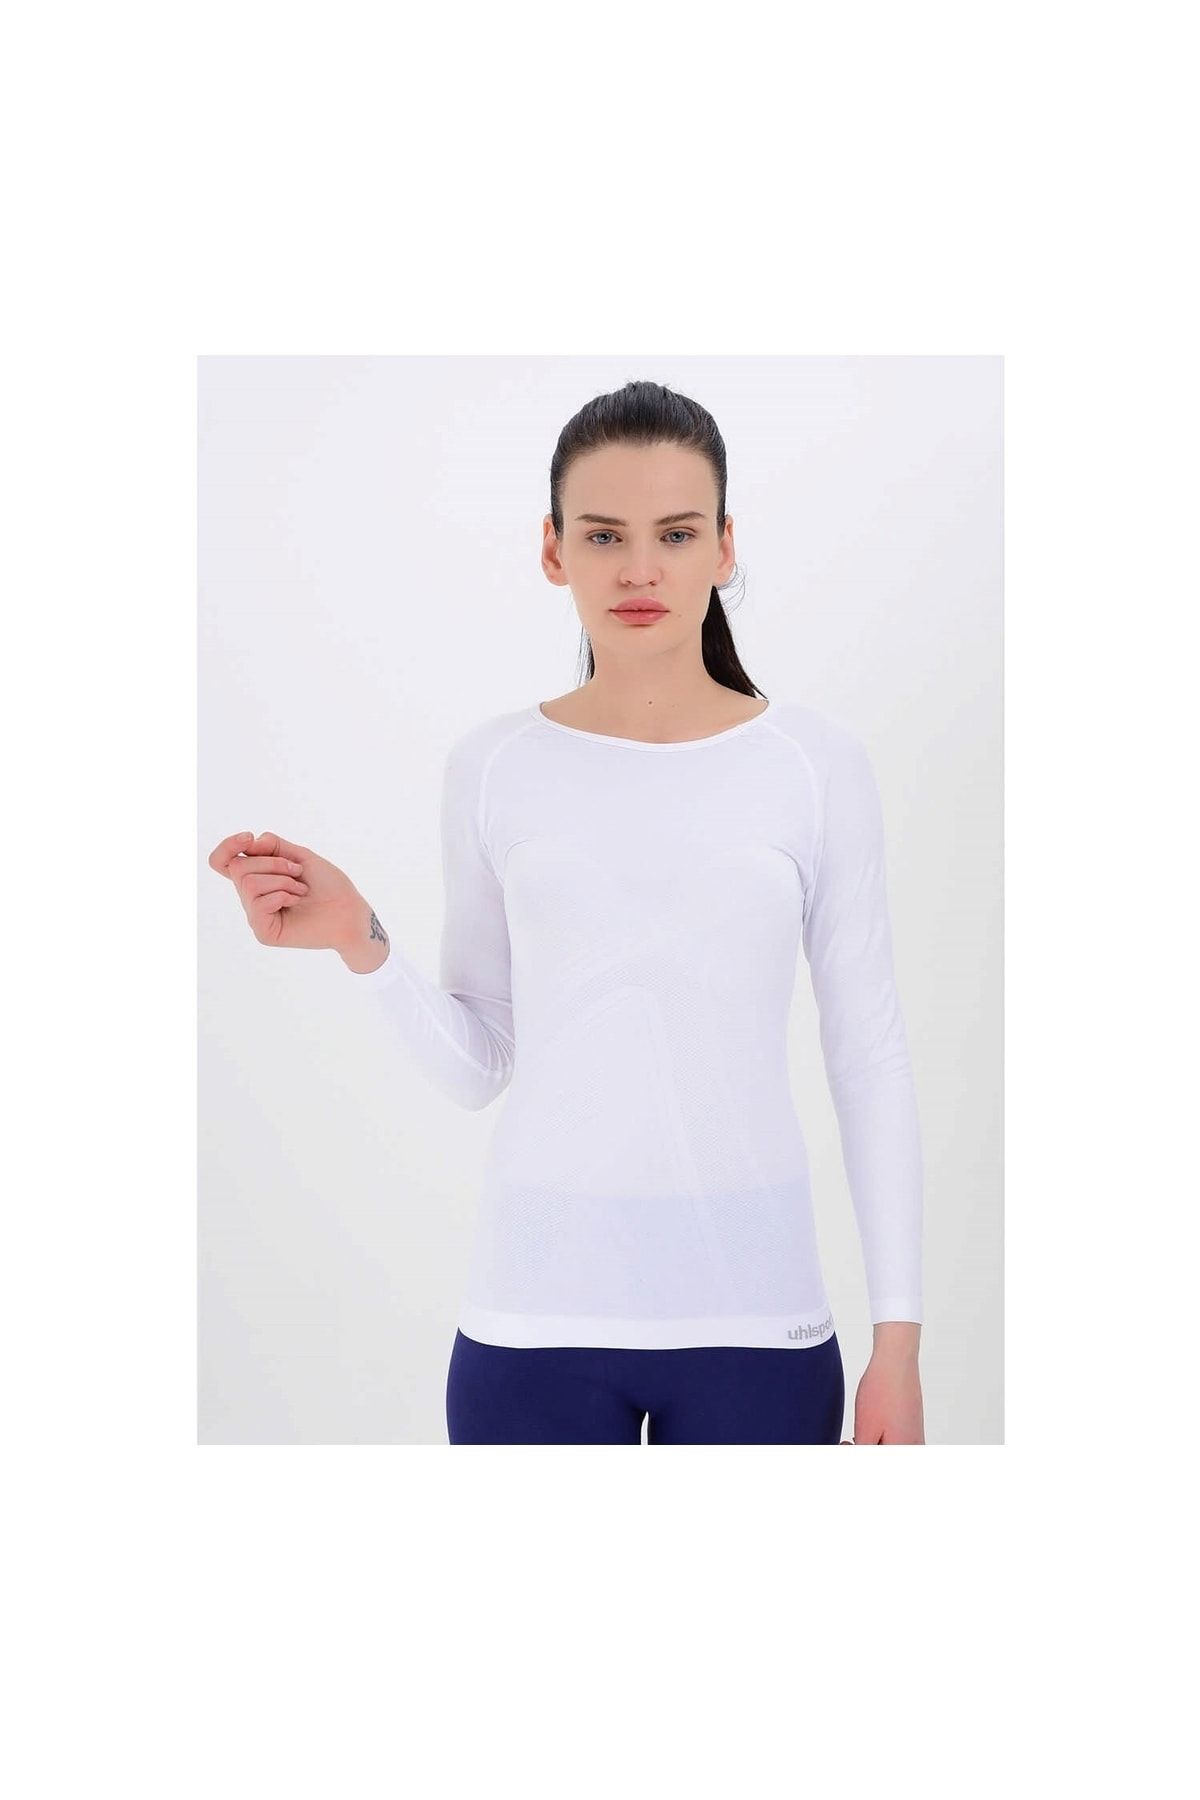 uhlsport Kadın Beyaz Sweatshirt - Body Adelıa - 12.10.032.002.588.005